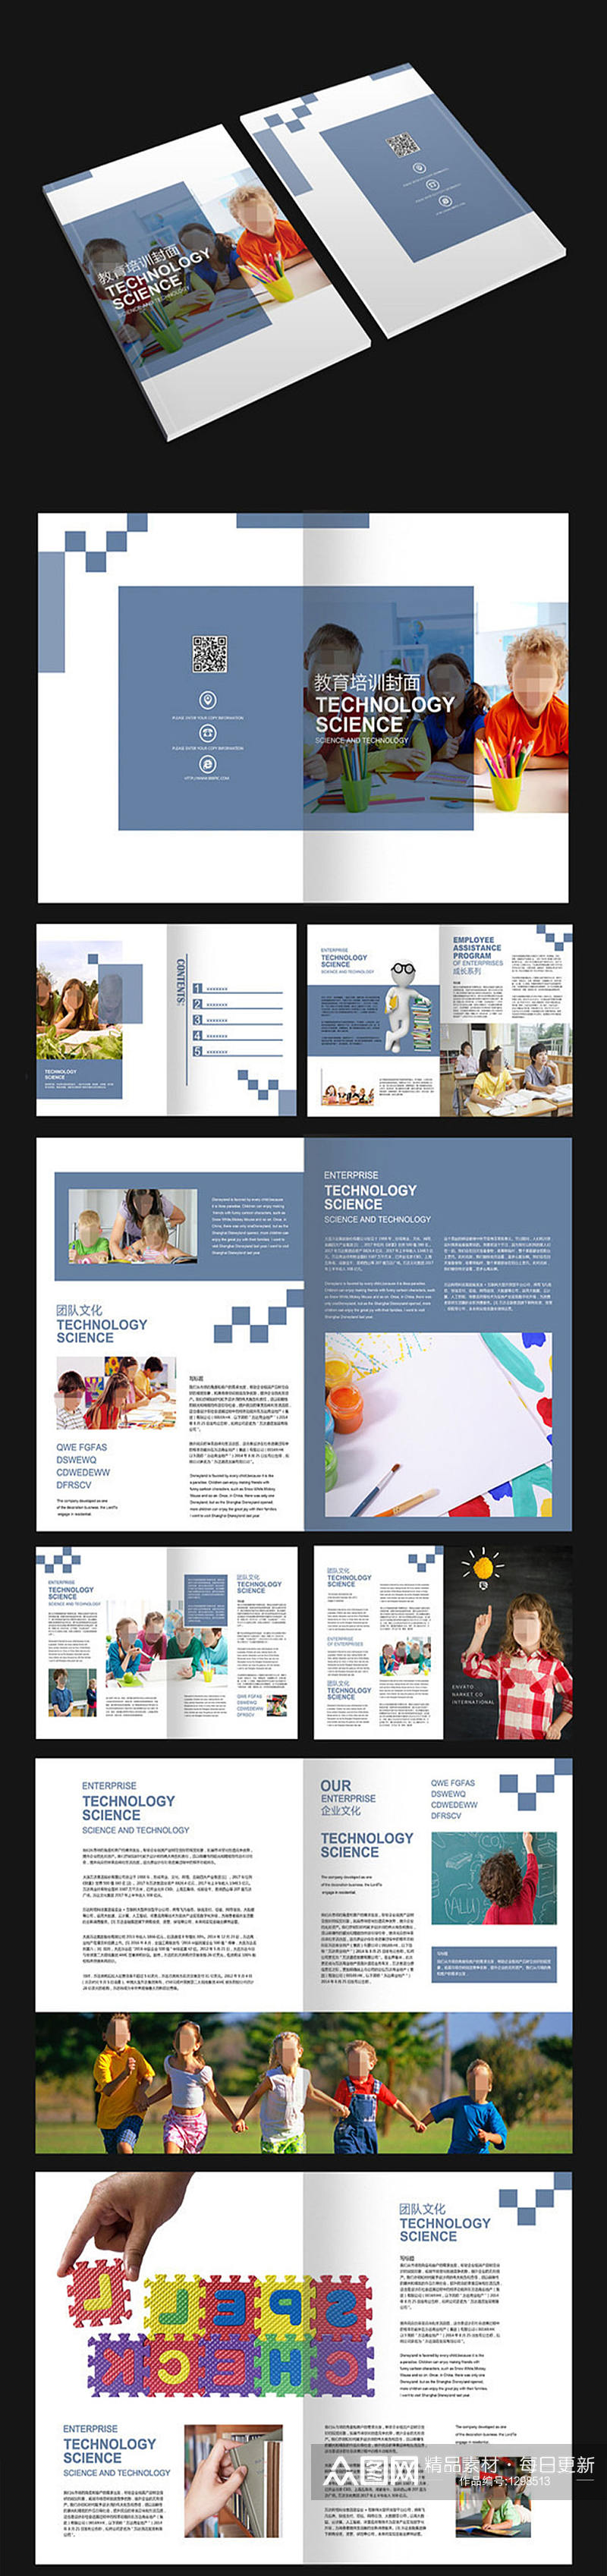 幼儿园教育画册设计素材